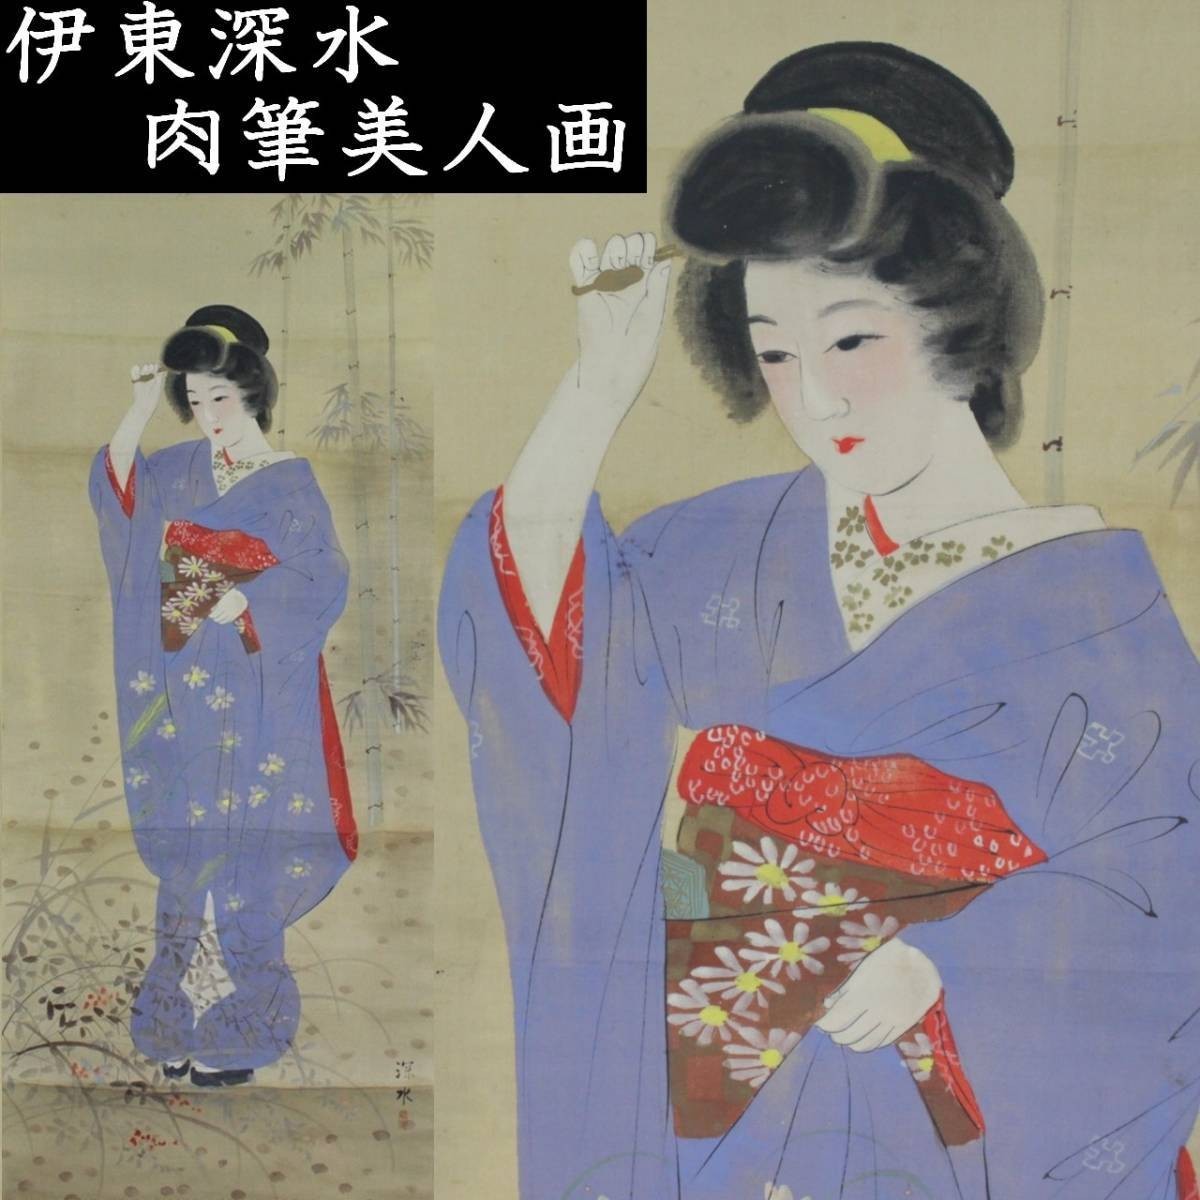 ｡◆ ◆ Ito Shinsui Schöne Frau malt Handgeschriebene Hängerolle aus Seide mit Schachtel Sammlung eines wohlhabenden Mannes T[S311]PT/23.9/GY/(100), Malerei, Japanische Malerei, Person, Bodhisattva